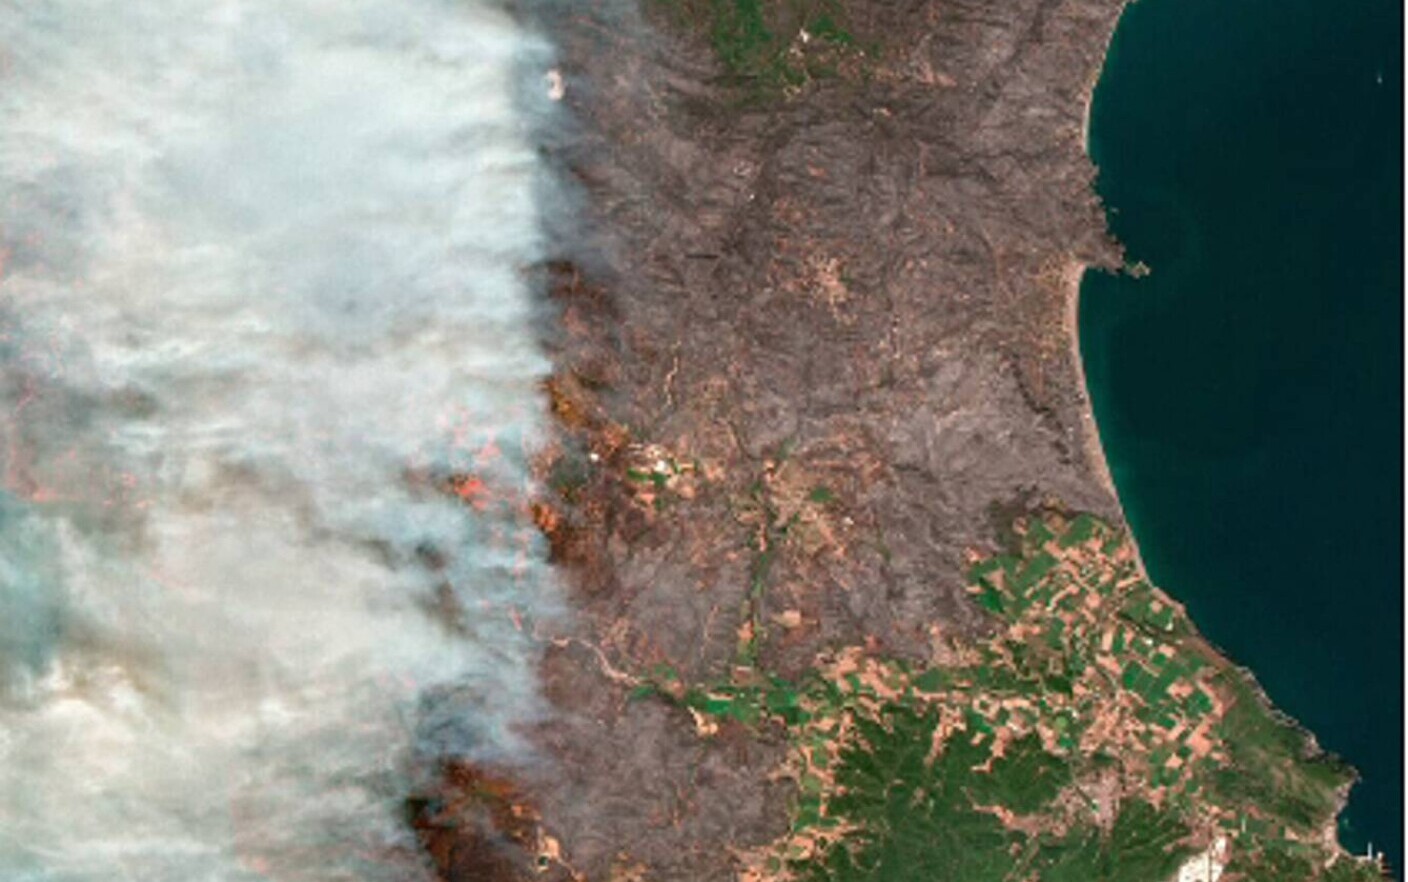 Οι φωτιές στην Ελλάδα είναι ορατές από το διάστημα.  Εικόνες που λαμβάνονται από δορυφόρους.  ΒΙΝΤΕΟ